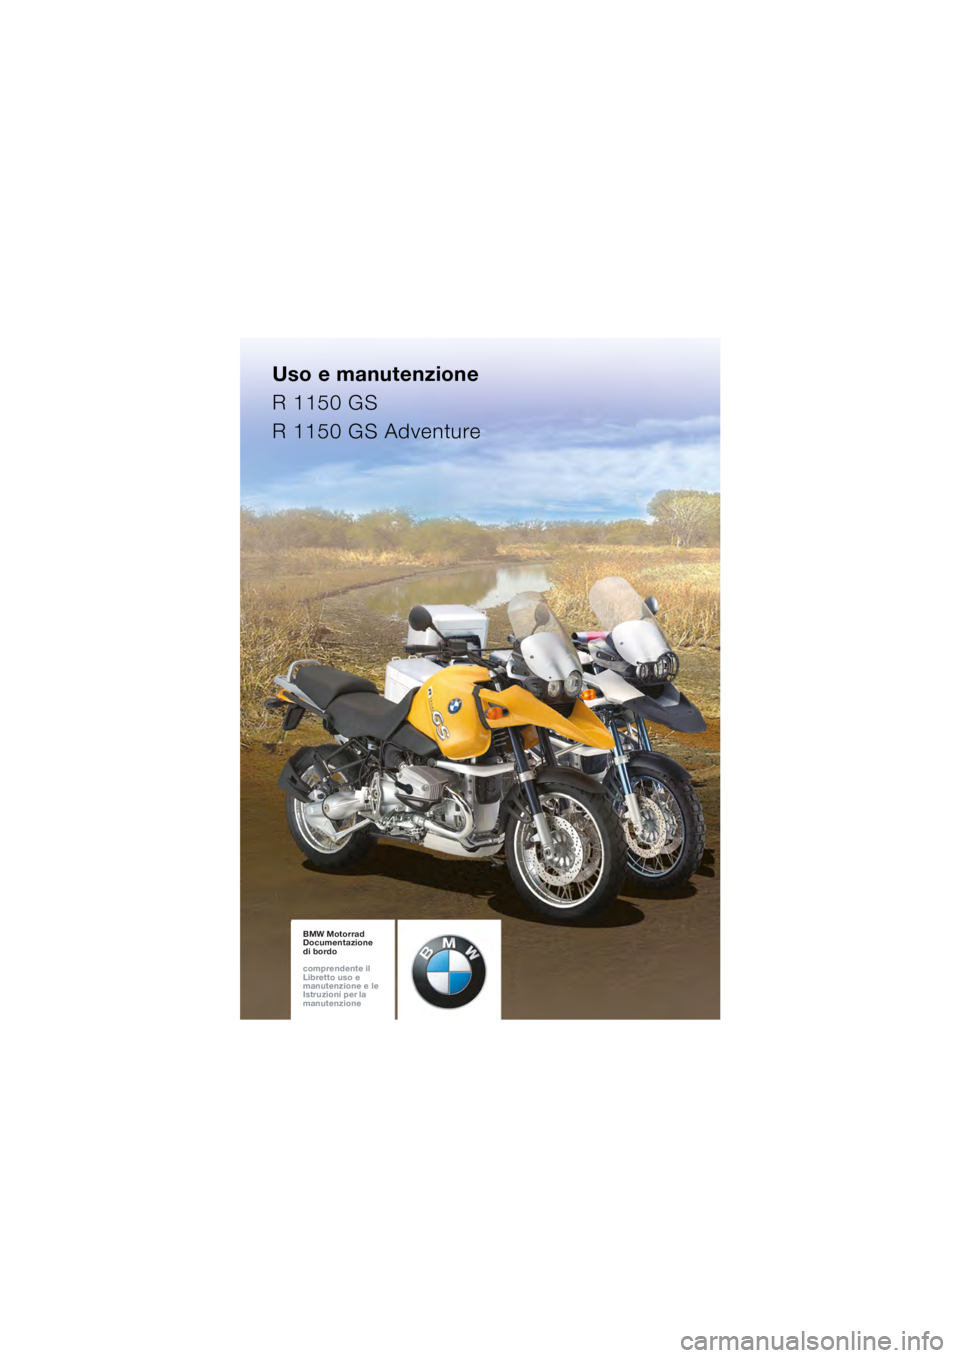 BMW MOTORRAD R 1150 GS 2002  Libretto di uso e manutenzione (in Italian) Uso e manutenzione
R 1150 GS
R 1150 GS Adventure
BMW Motorrad
Documentazione  
di bordo
comprendente il  
Libretto uso e  
manutenzione e le  
Istruzioni per la  
manutenzioneBMW Motorrad
Documentazio